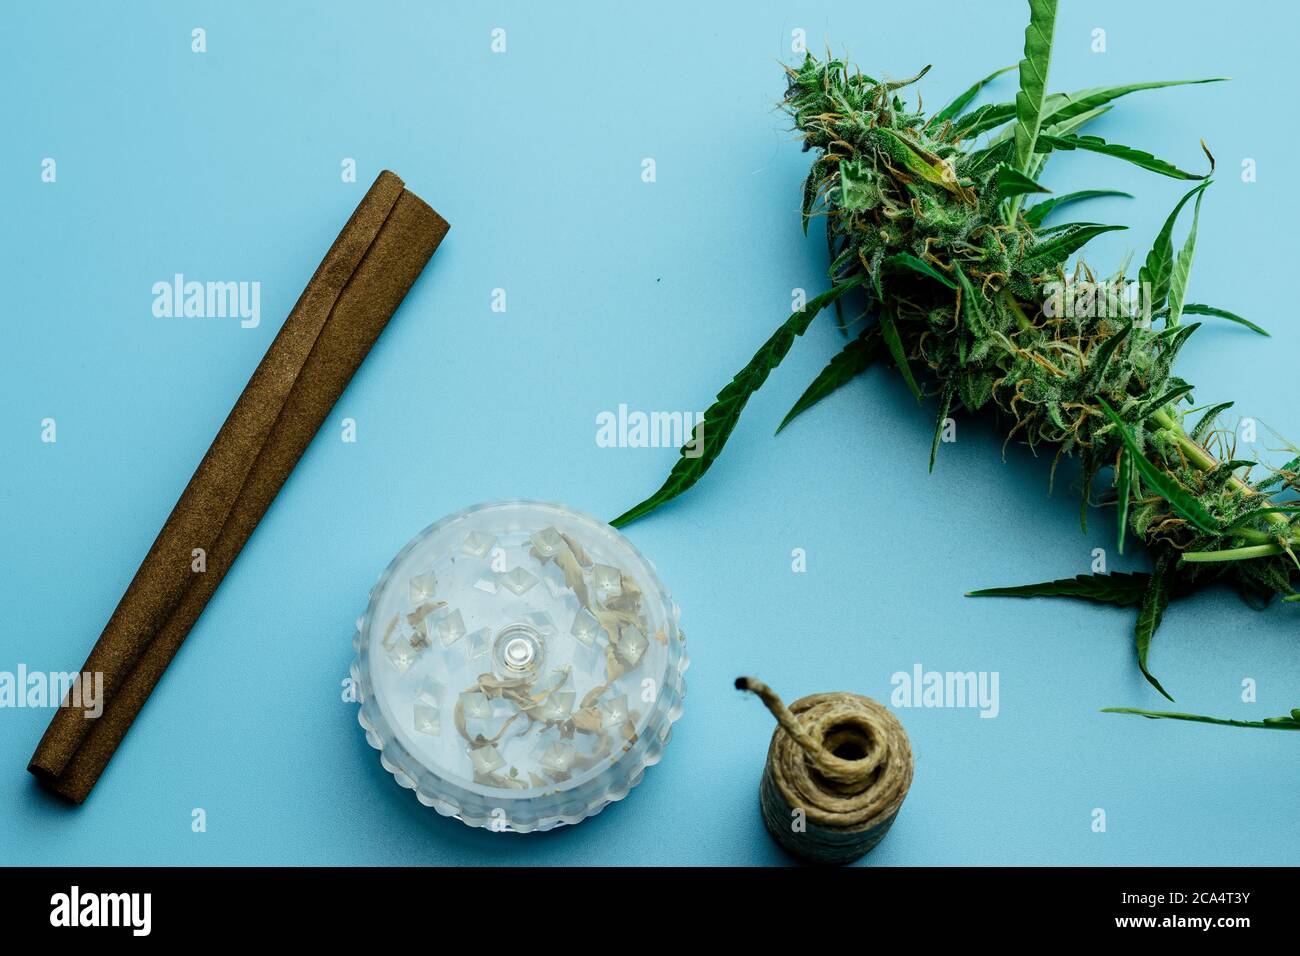 Industria del commercio della cannabis. Fumare marijuana accessori vista dall'alto su sfondo blu con grandi germogli di piante erbacce. THC uso medico di droga Foto Stock